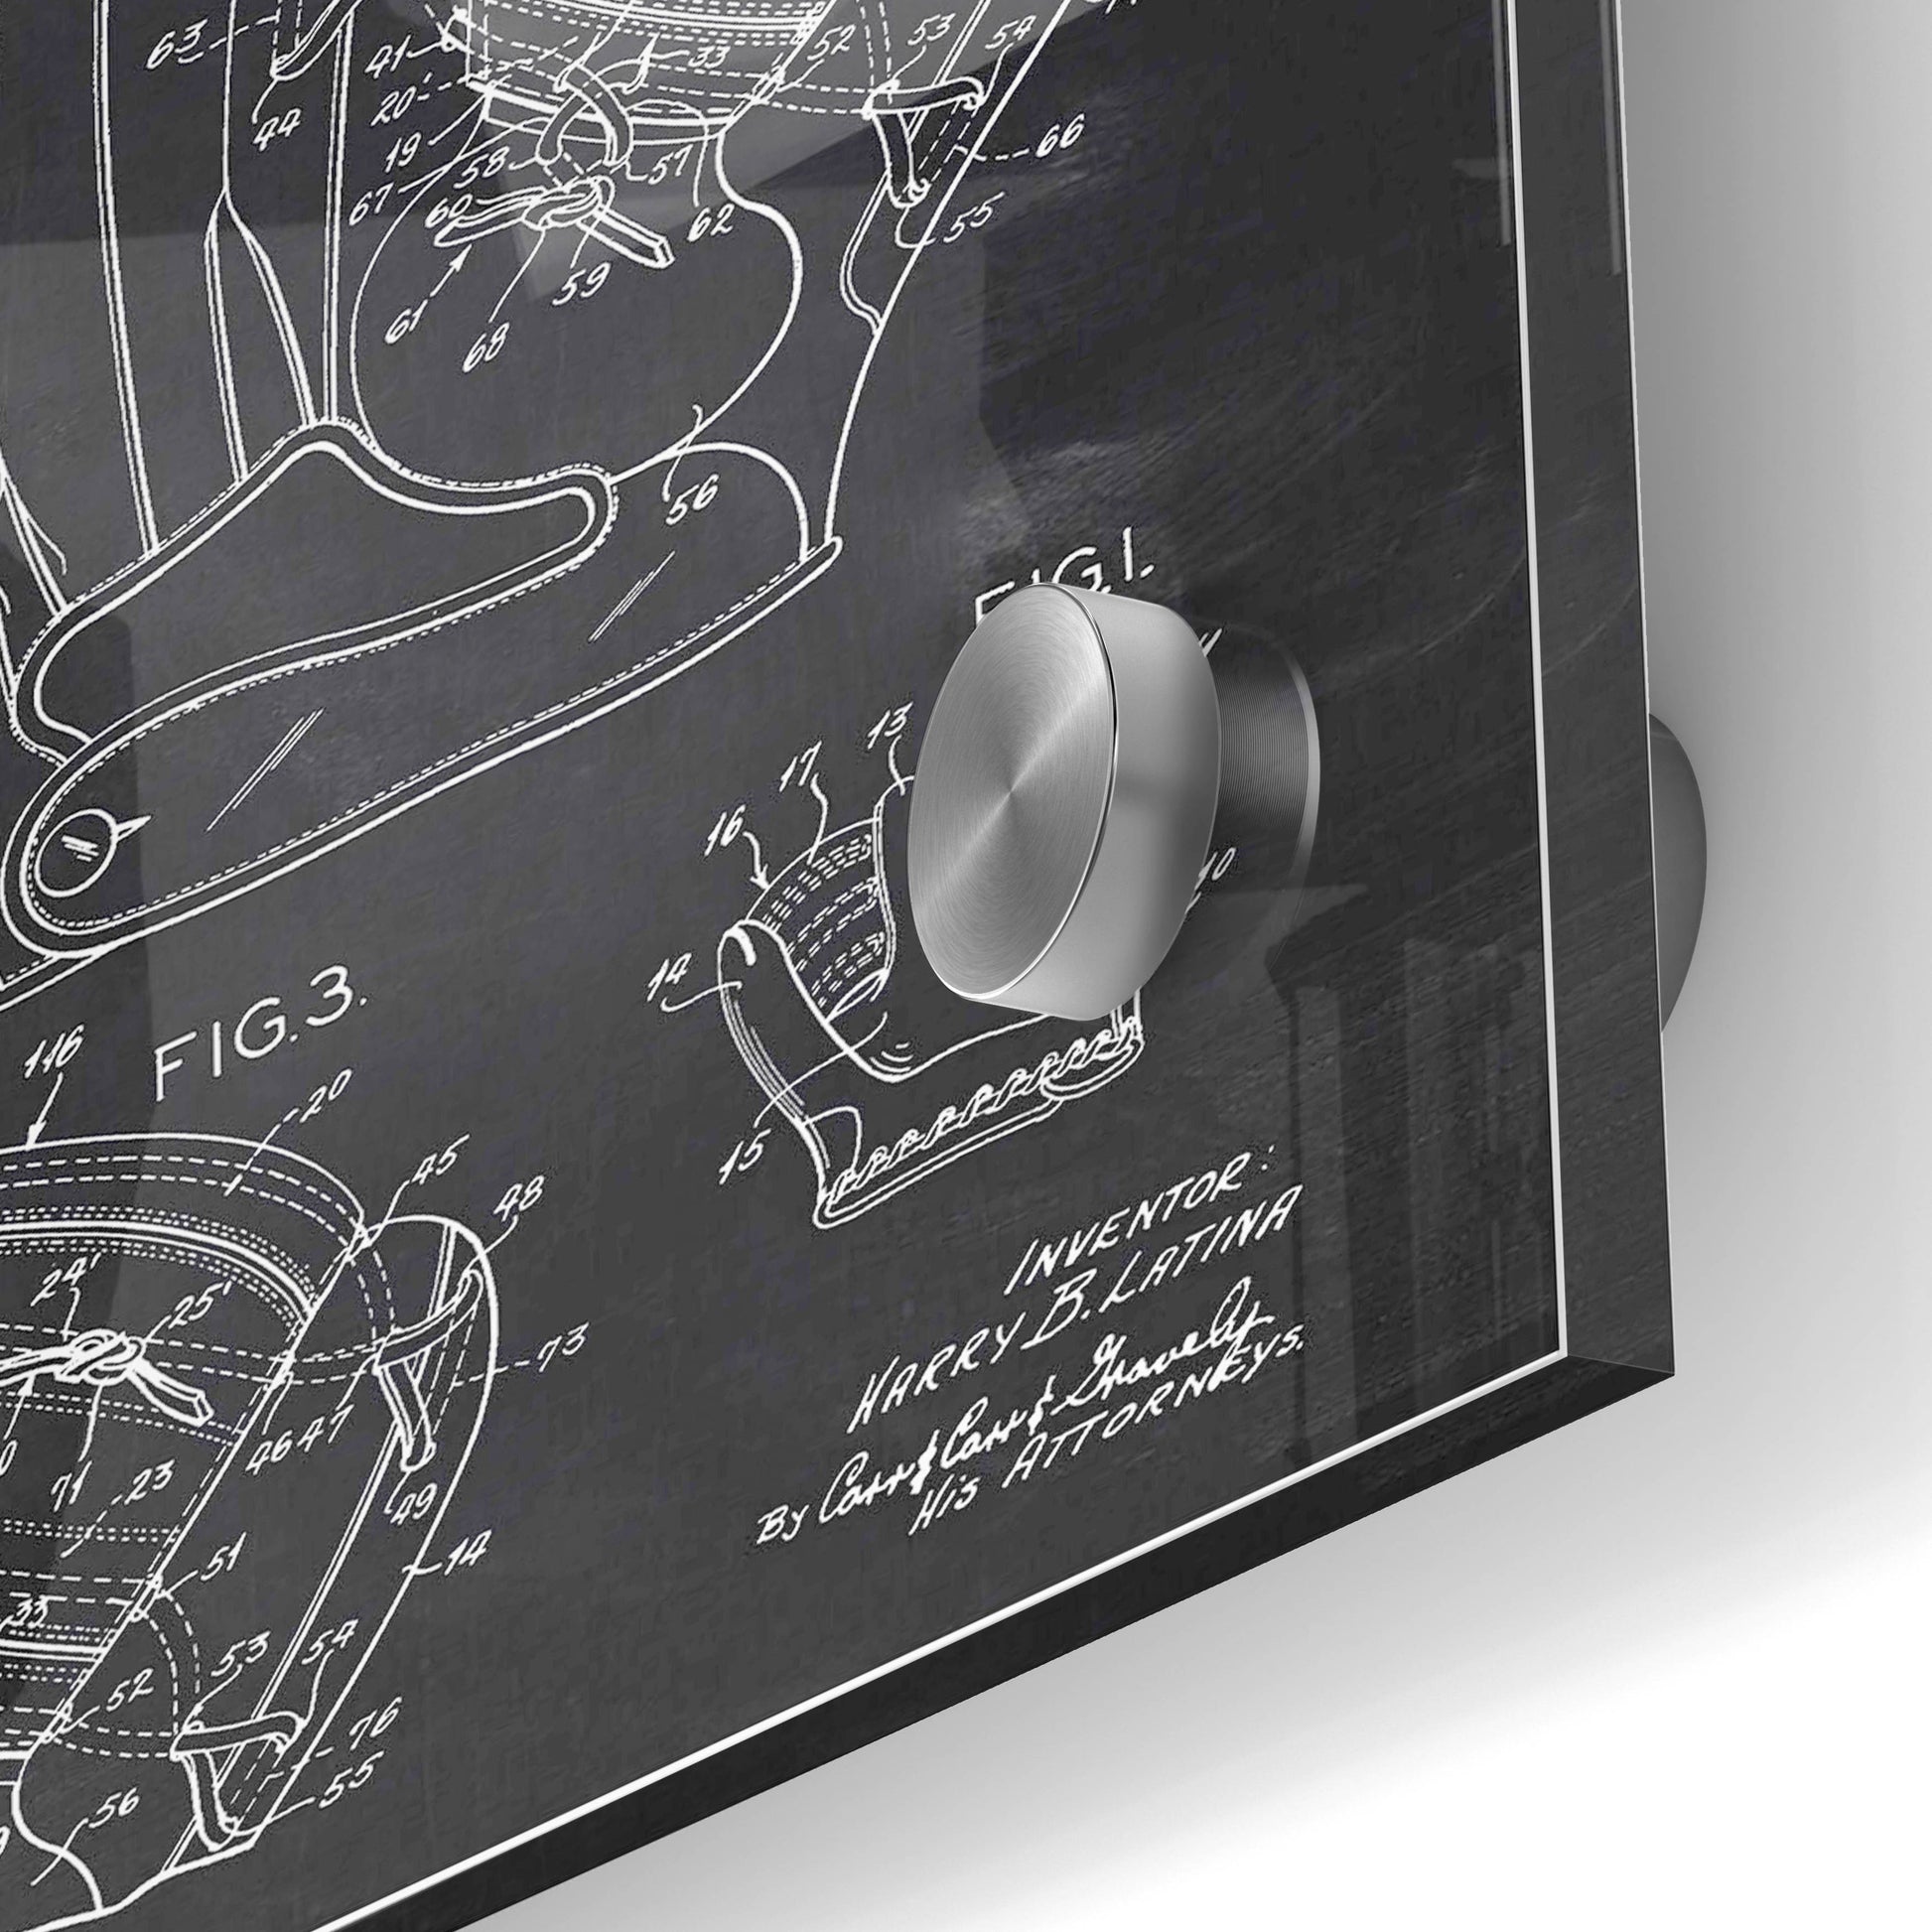 Epic Art 'Baseball Glove Blueprint Patent Chalkboard' Acrylic Glass Wall Art,24x36